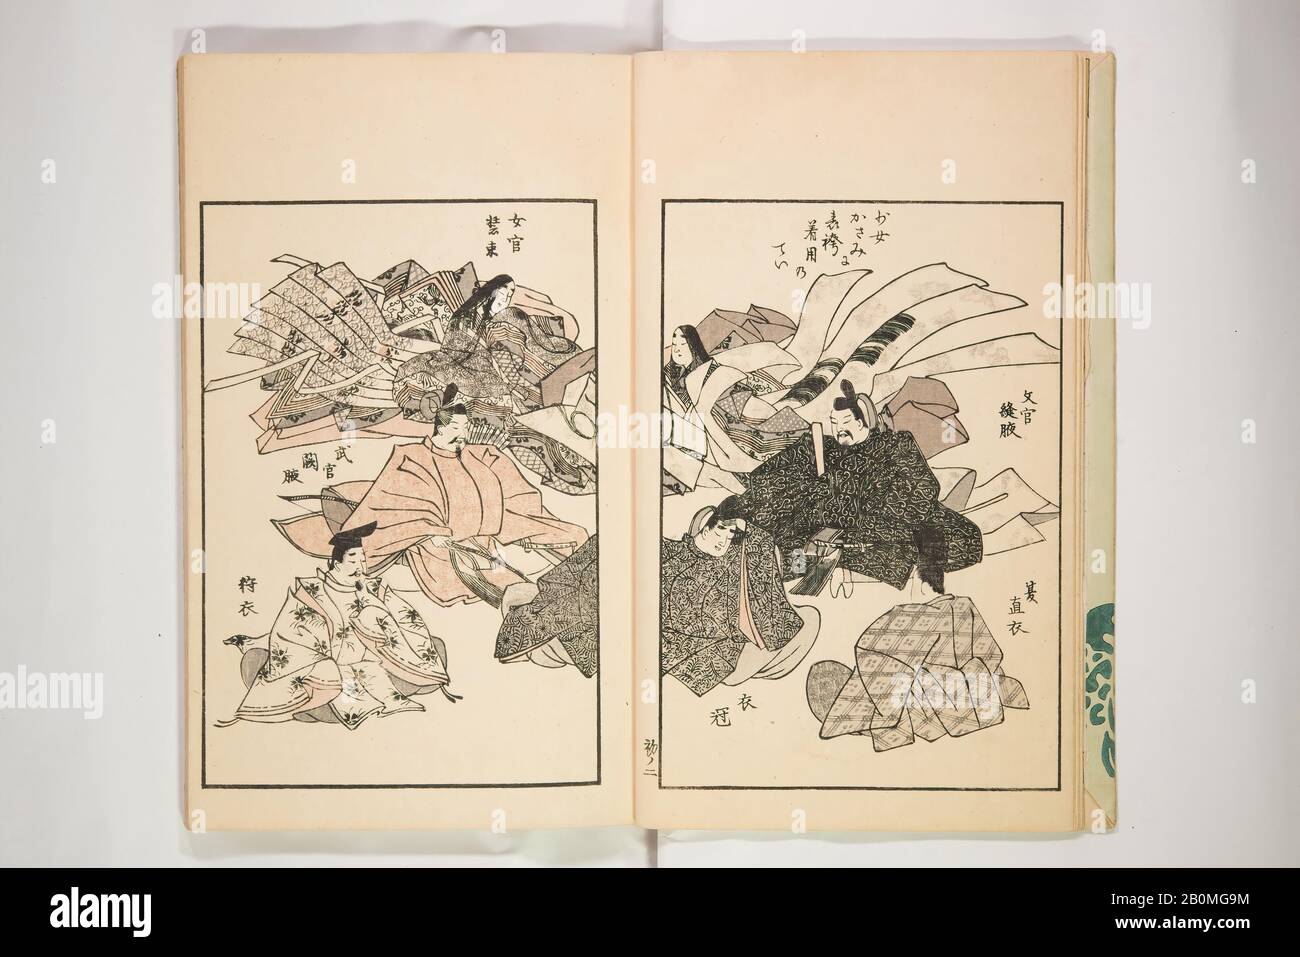 Chiyomigusa (Libro sobre Diseño), Japón, 1901, Japón, Tres volúmenes, En Total: 6 1/2 x 9 1/2 pulg. (16.5 x 24.1 cm), libros Ilustrados Foto de stock